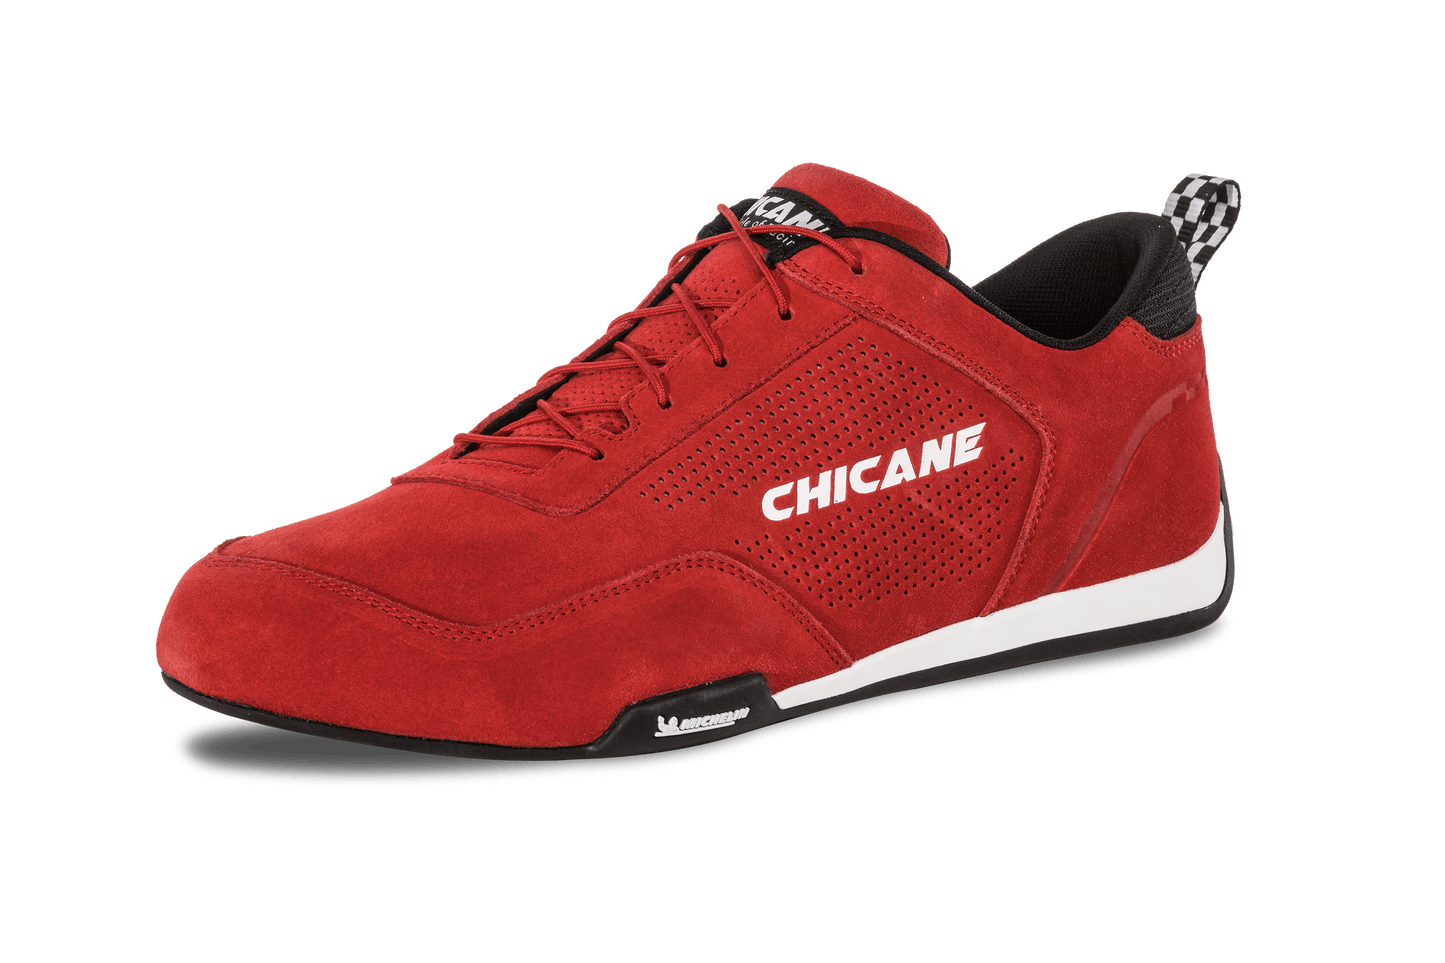 Chicane Men's Speedster Racing Shoe, Red